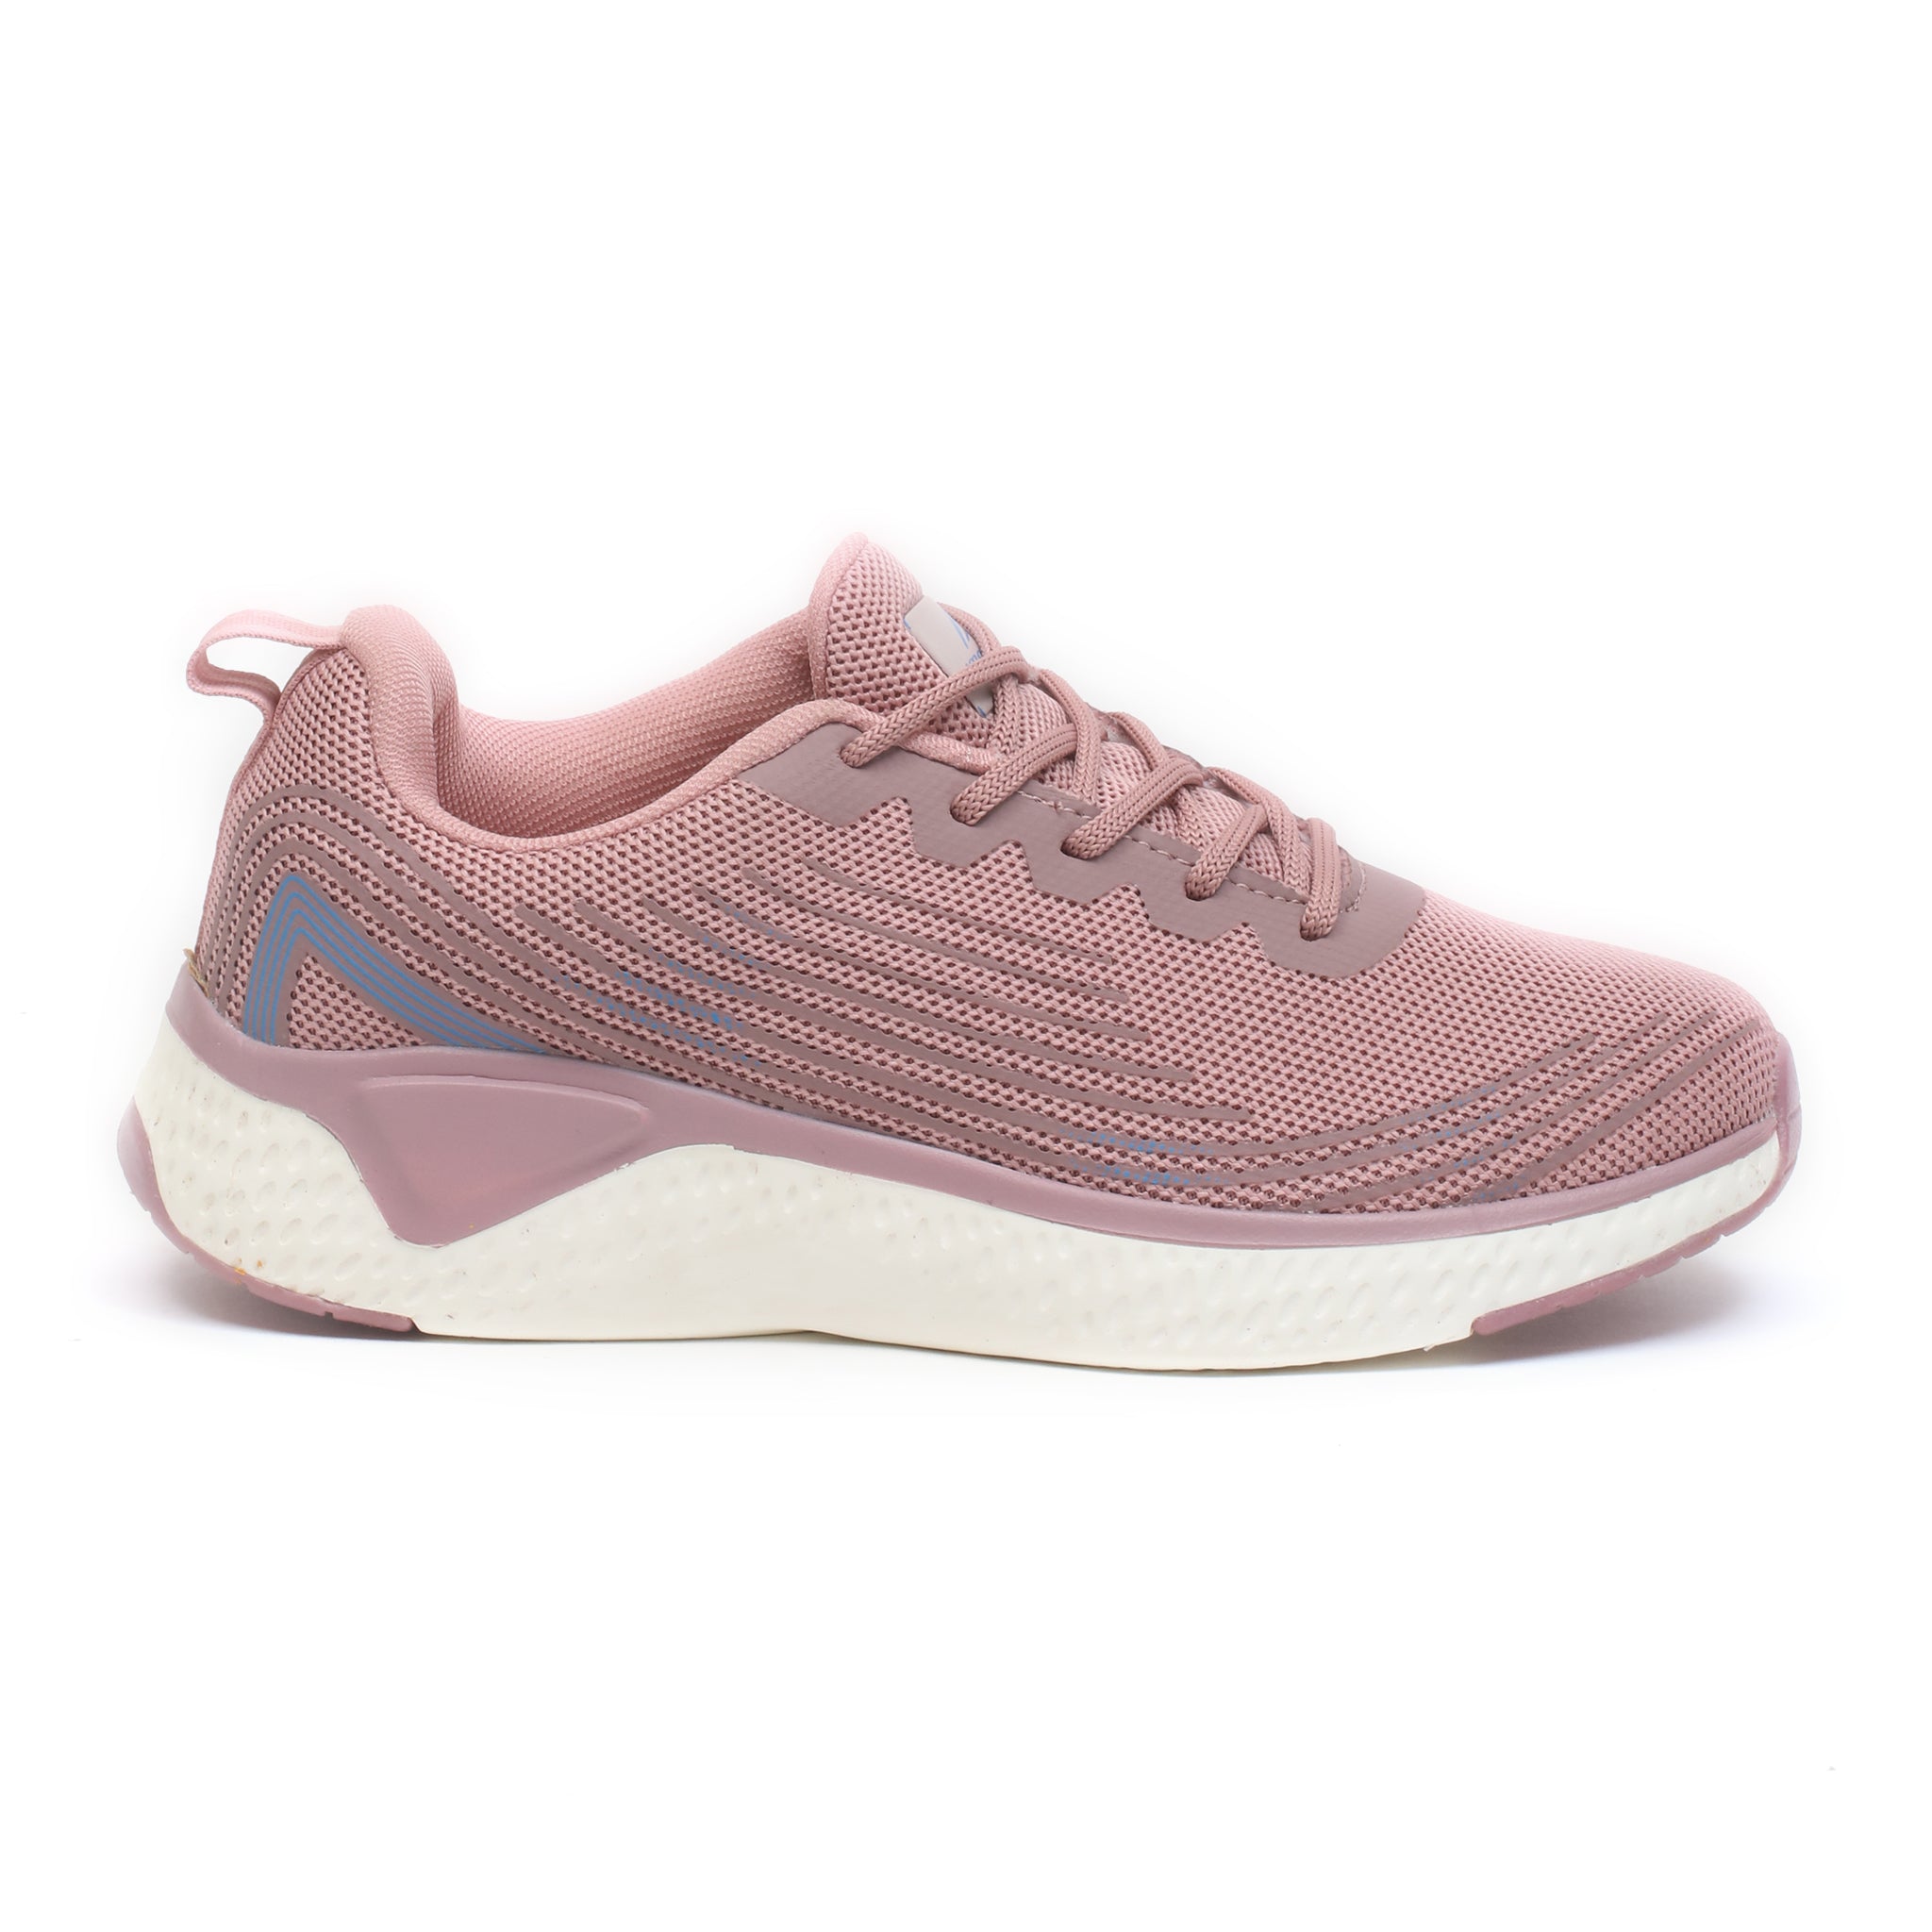 Impakto Women's Pink Running Shoes